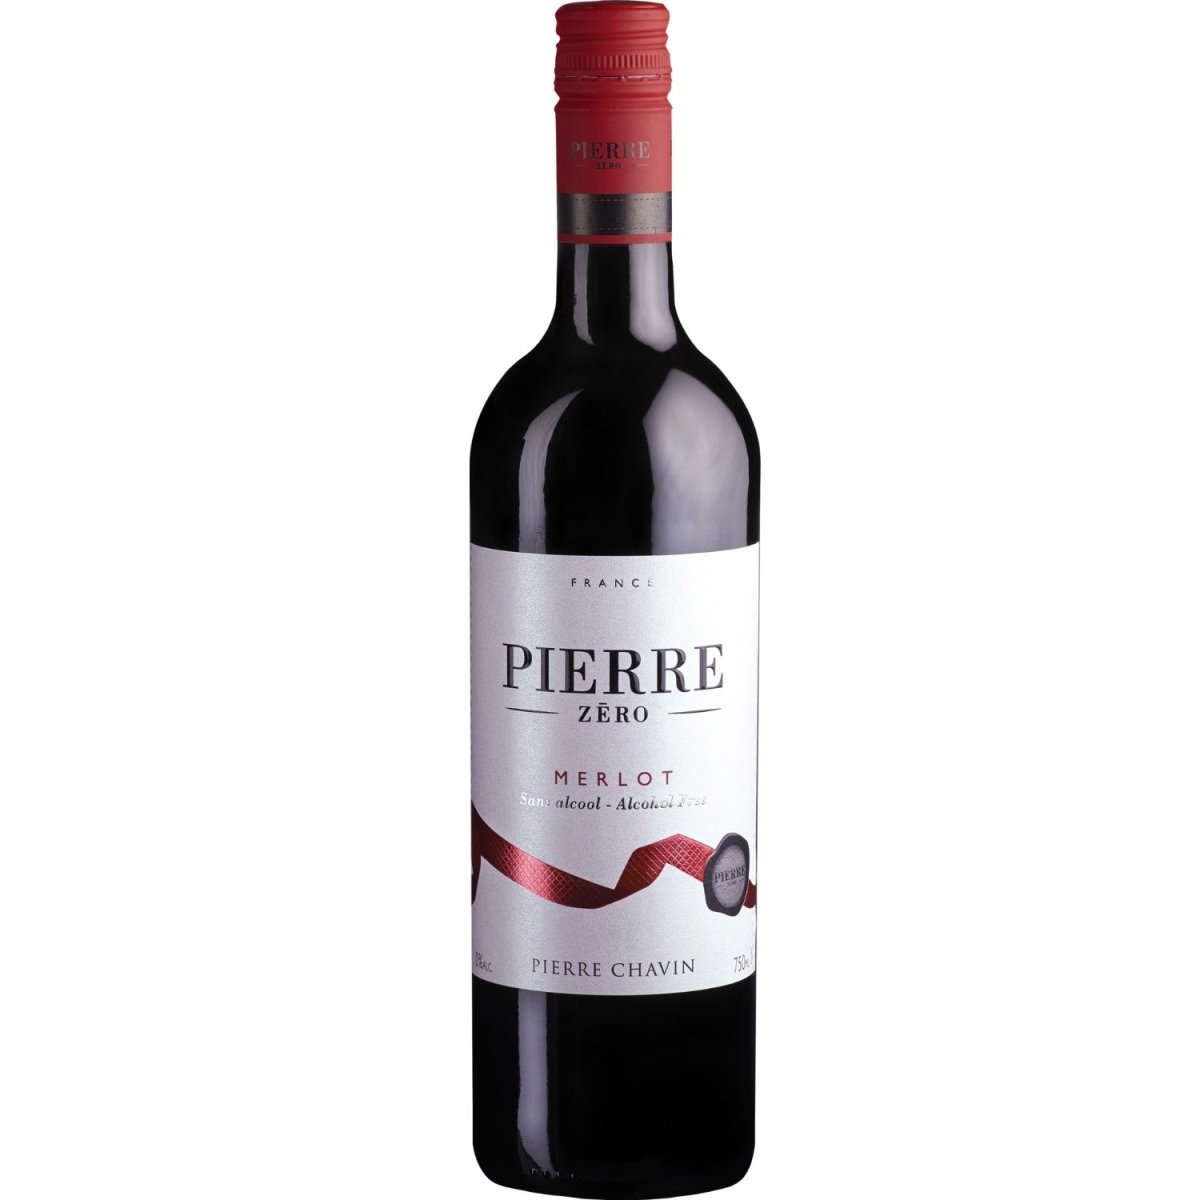 Pierre Chavin Pierre Zéro Merlot Rotwein Wein alkoholfrei trocken Frankreich (1 x 0,75l) - Versanel -